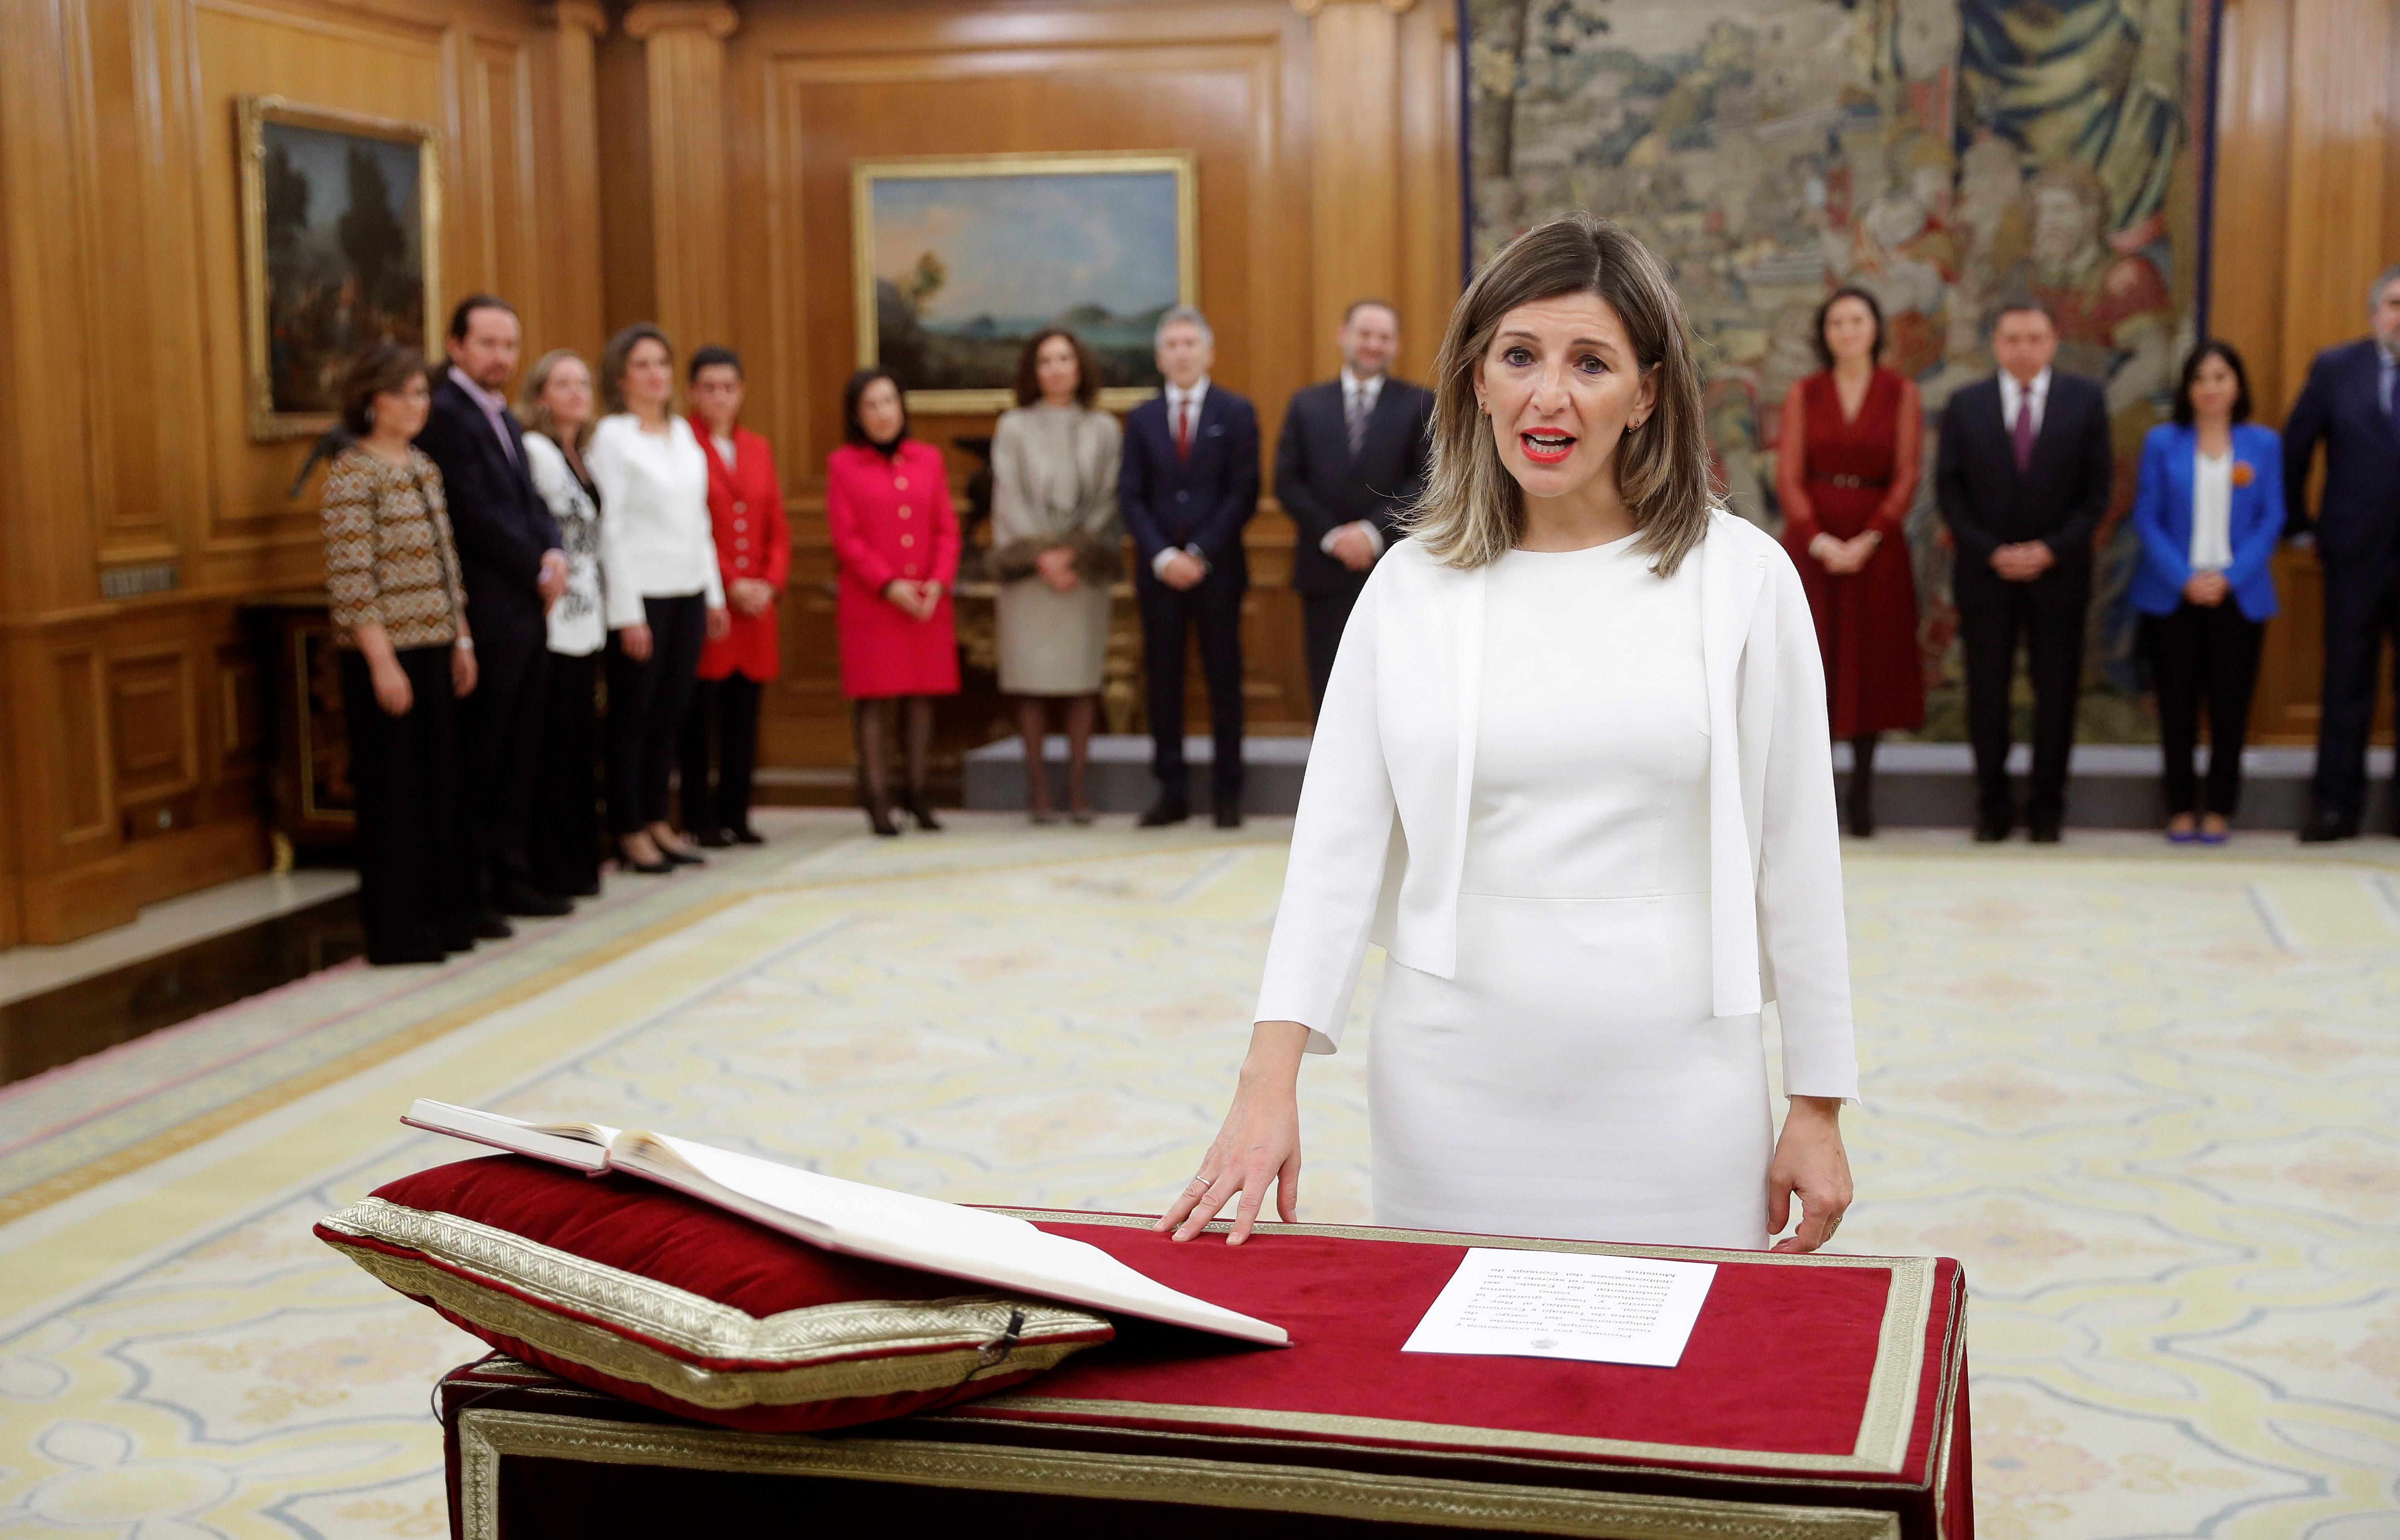 La nueva ministra de Trabajo Yolanda Díaz promete su cargo ante el Rey Felipe VI en el Palacio de la Zarzuela de Madrid a 13 de enero de 2020